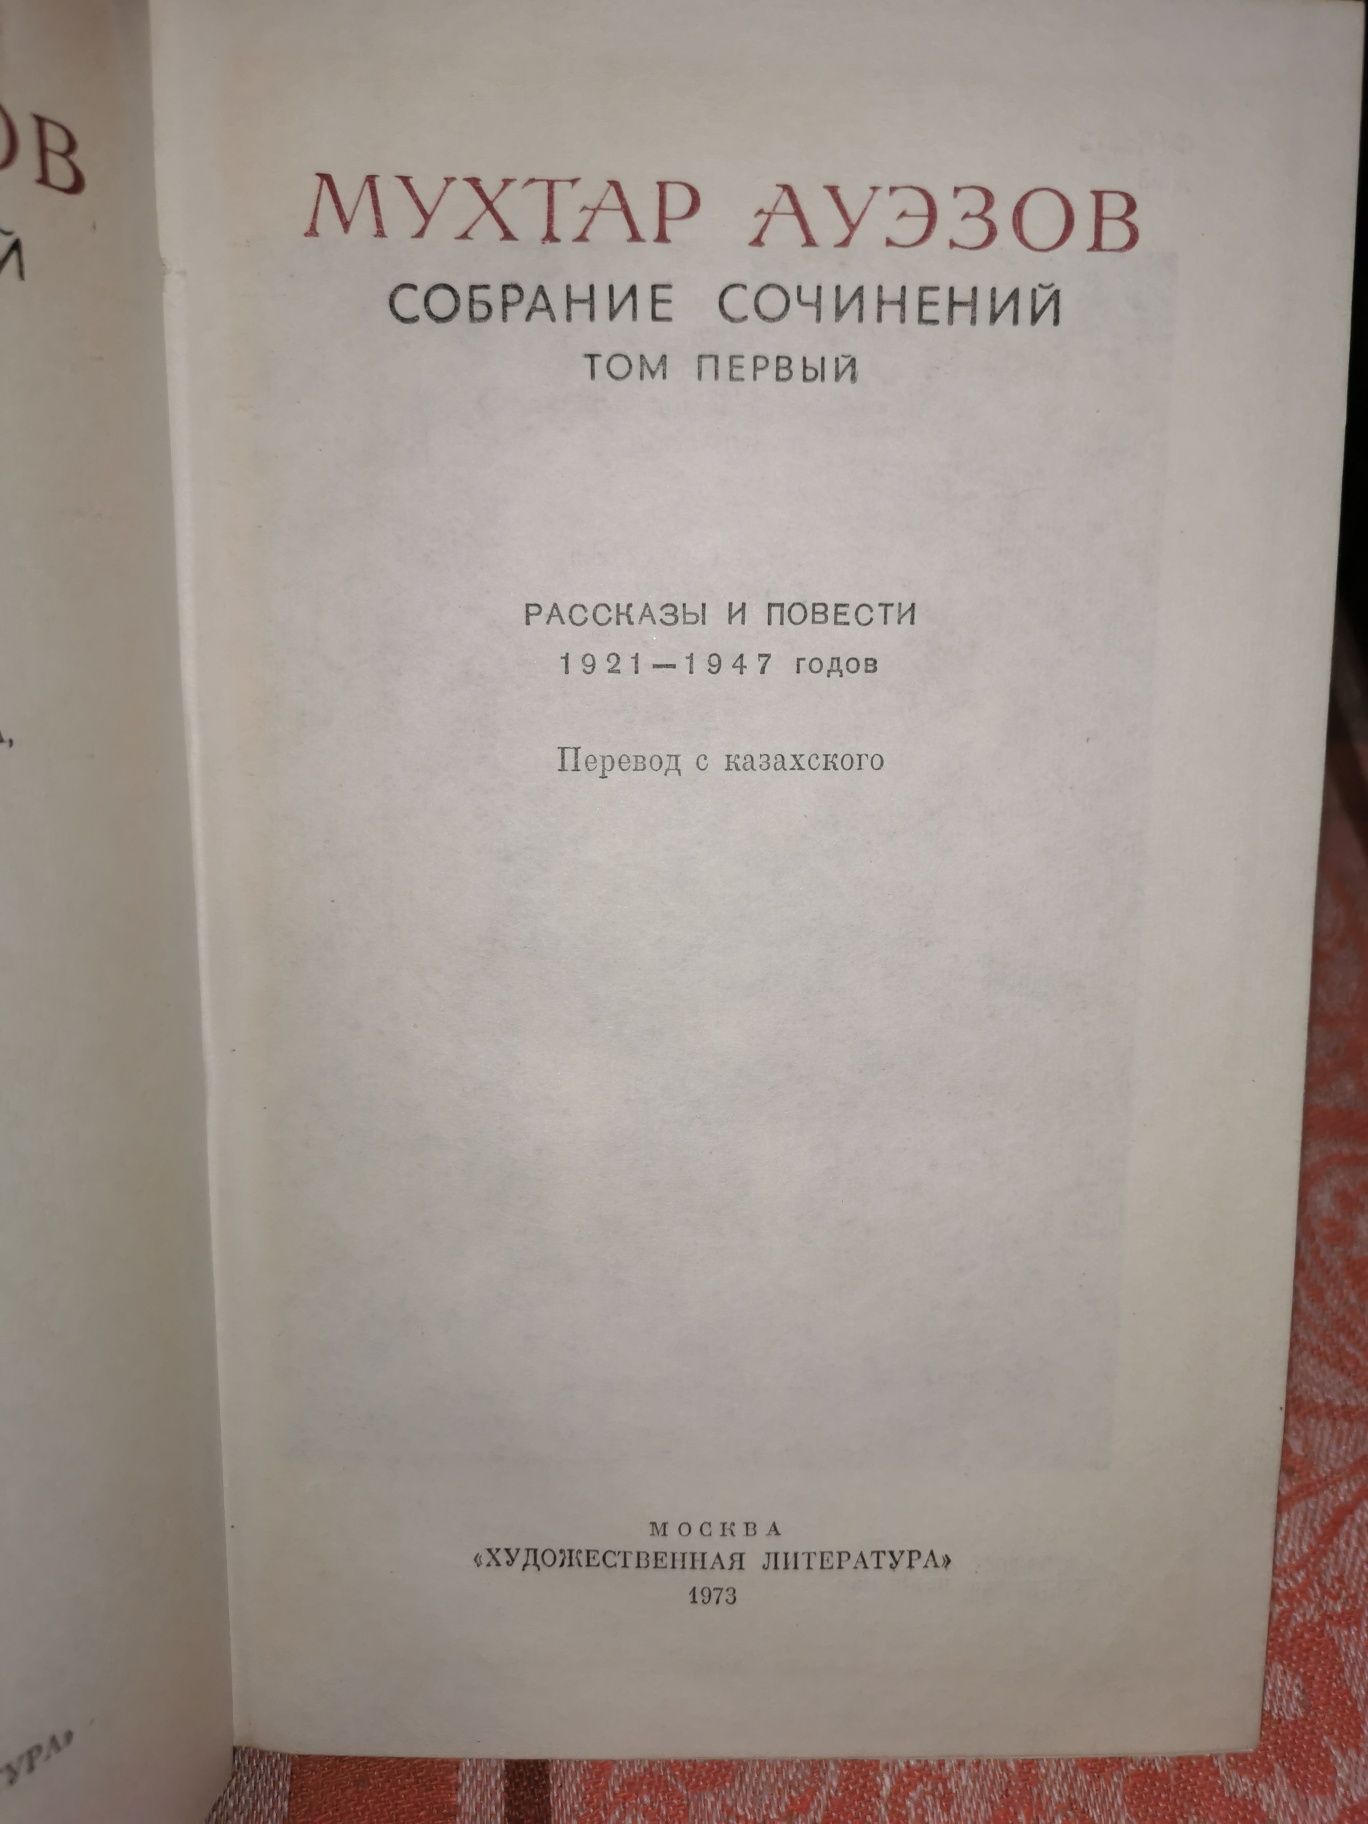 Собрание сочинений М. Ауэзова в 5 томах